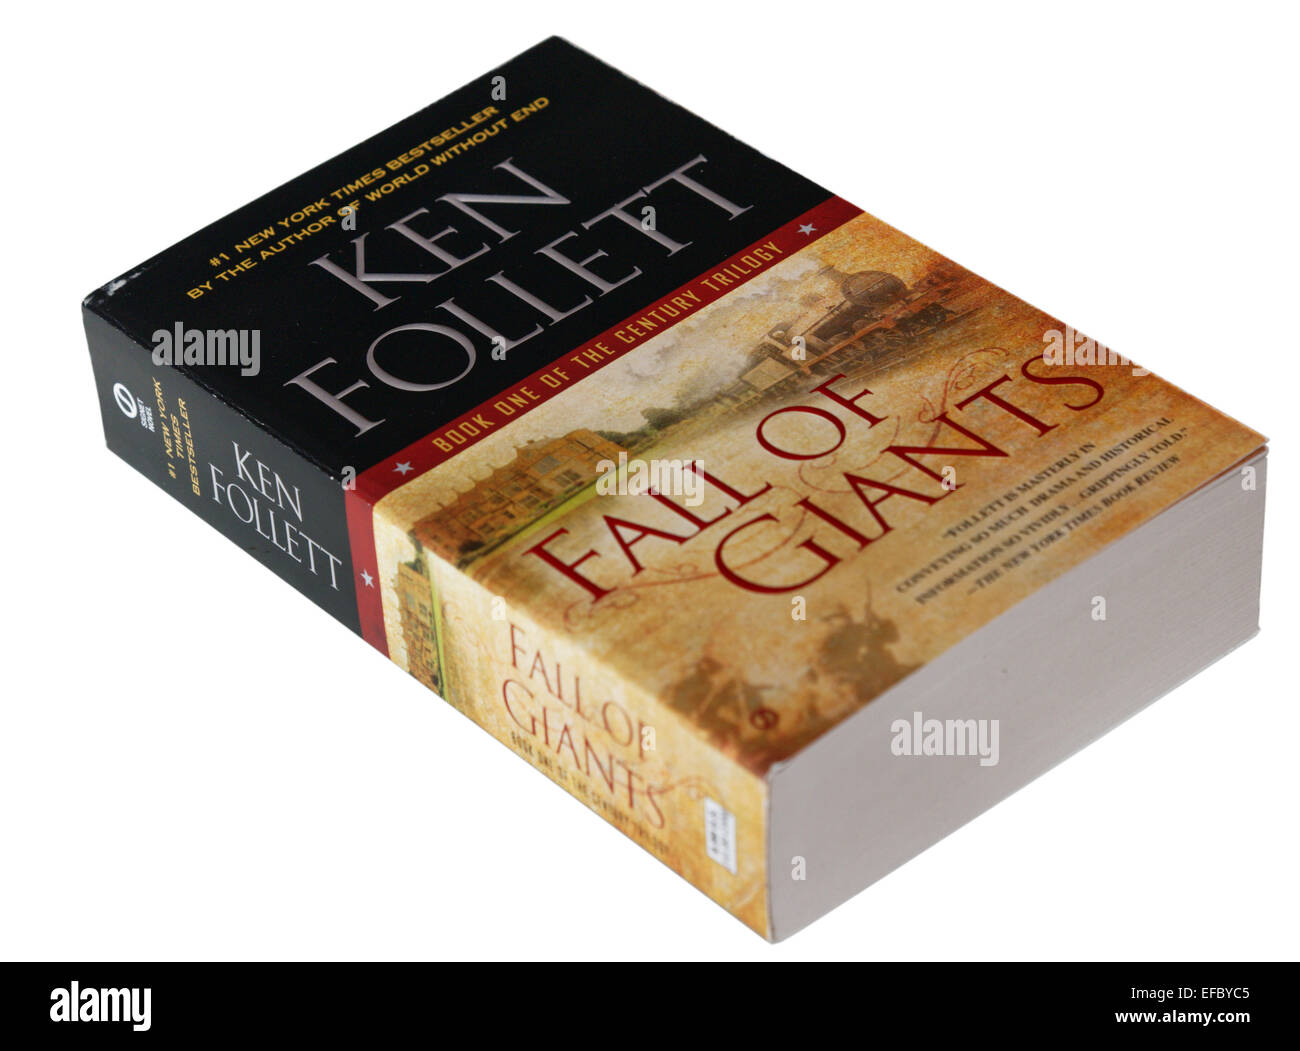 Chute de géants, le premier livre de Ken Follett's Century Trilogy Banque D'Images